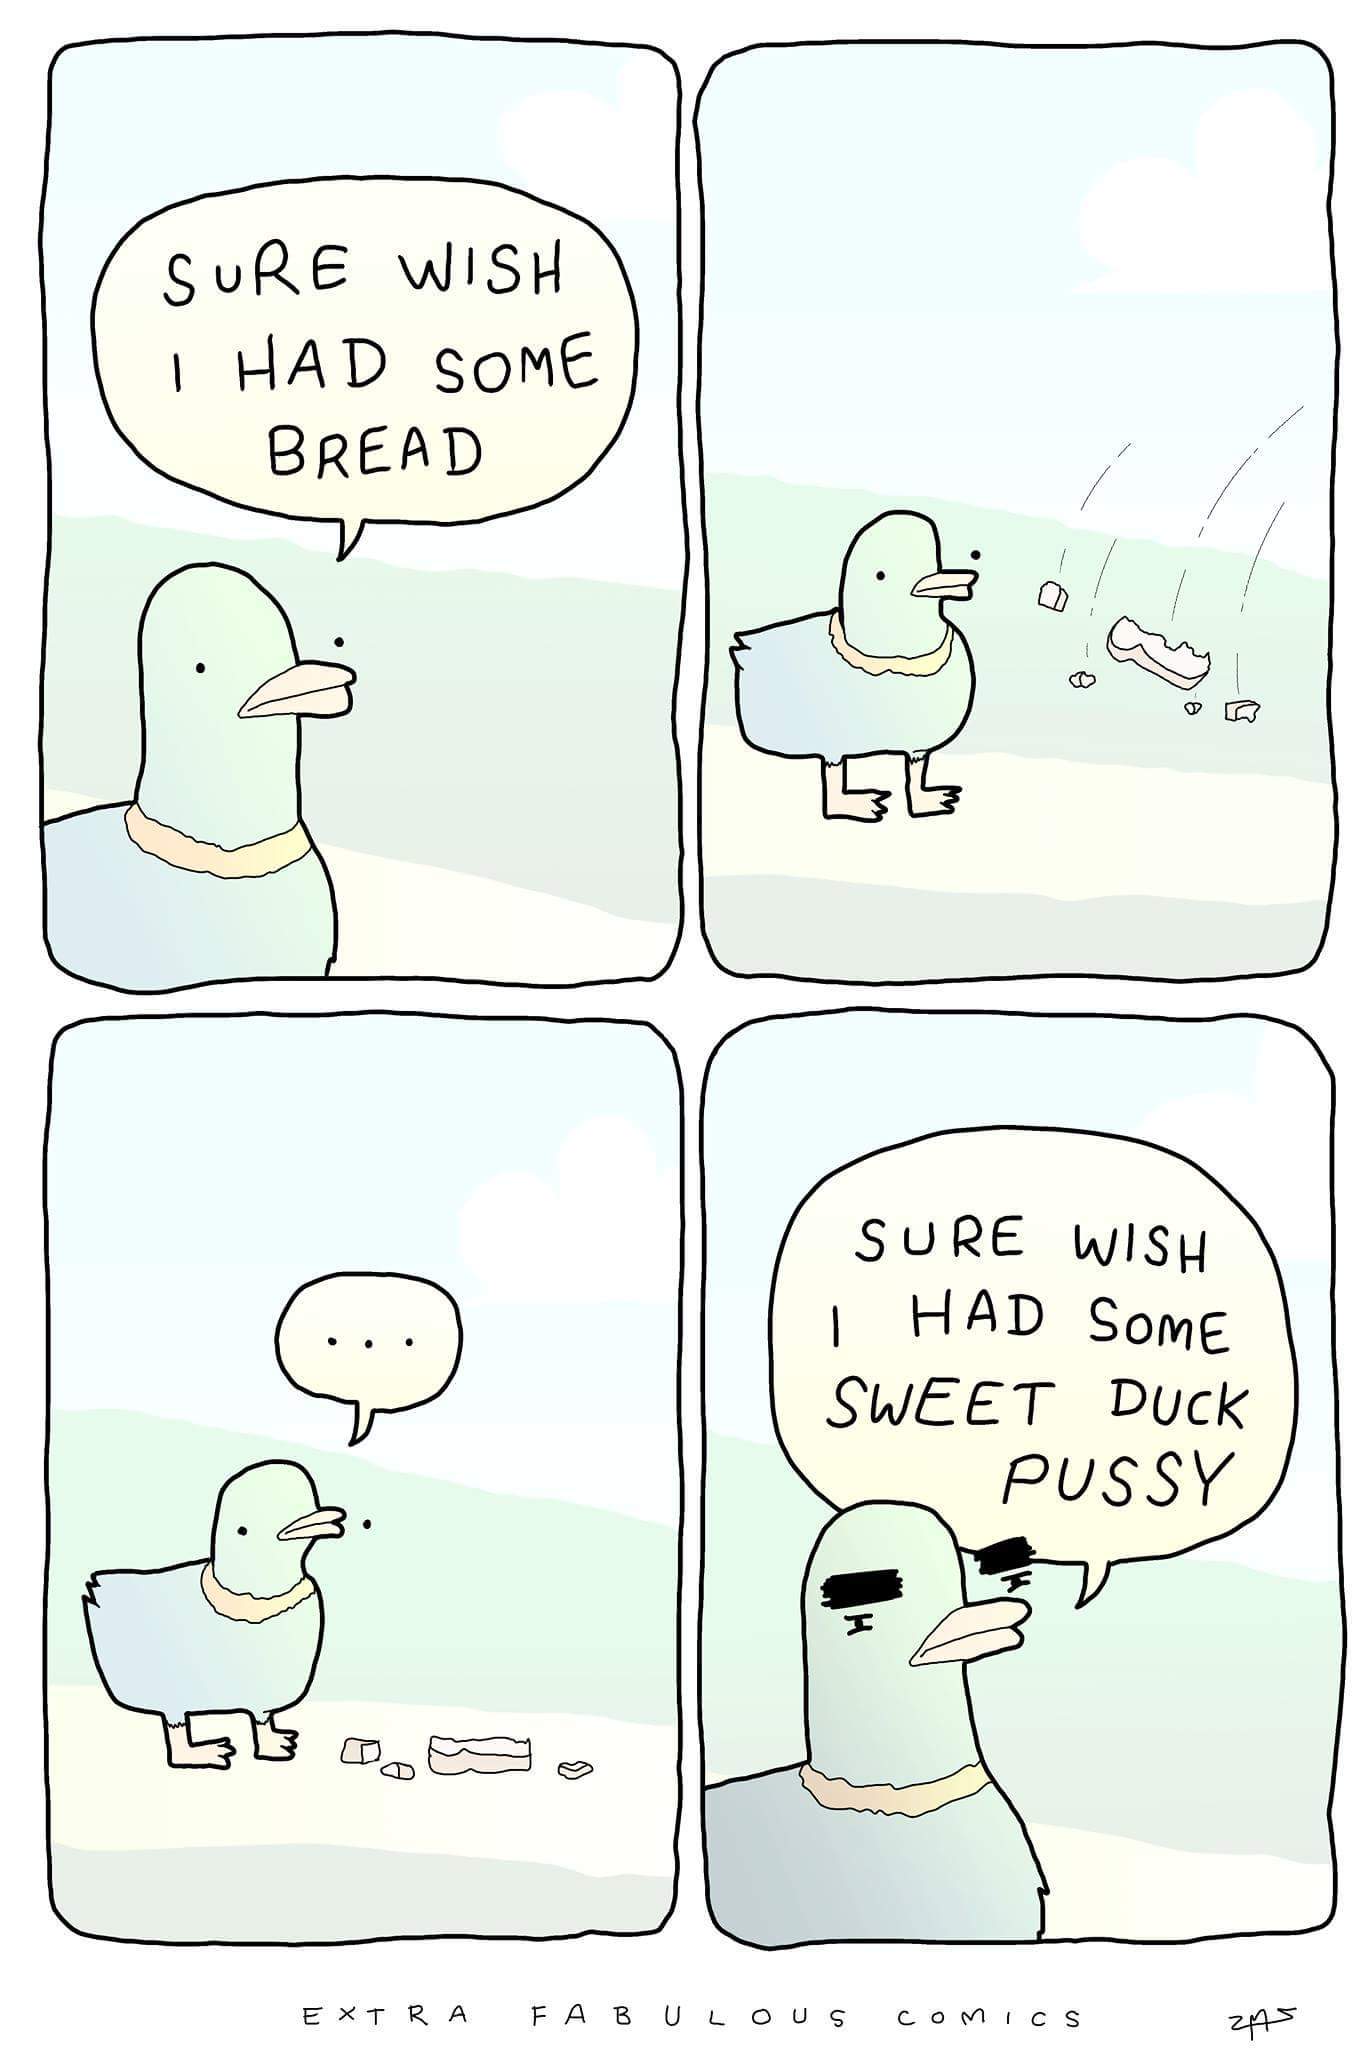 Duck pussy - meme